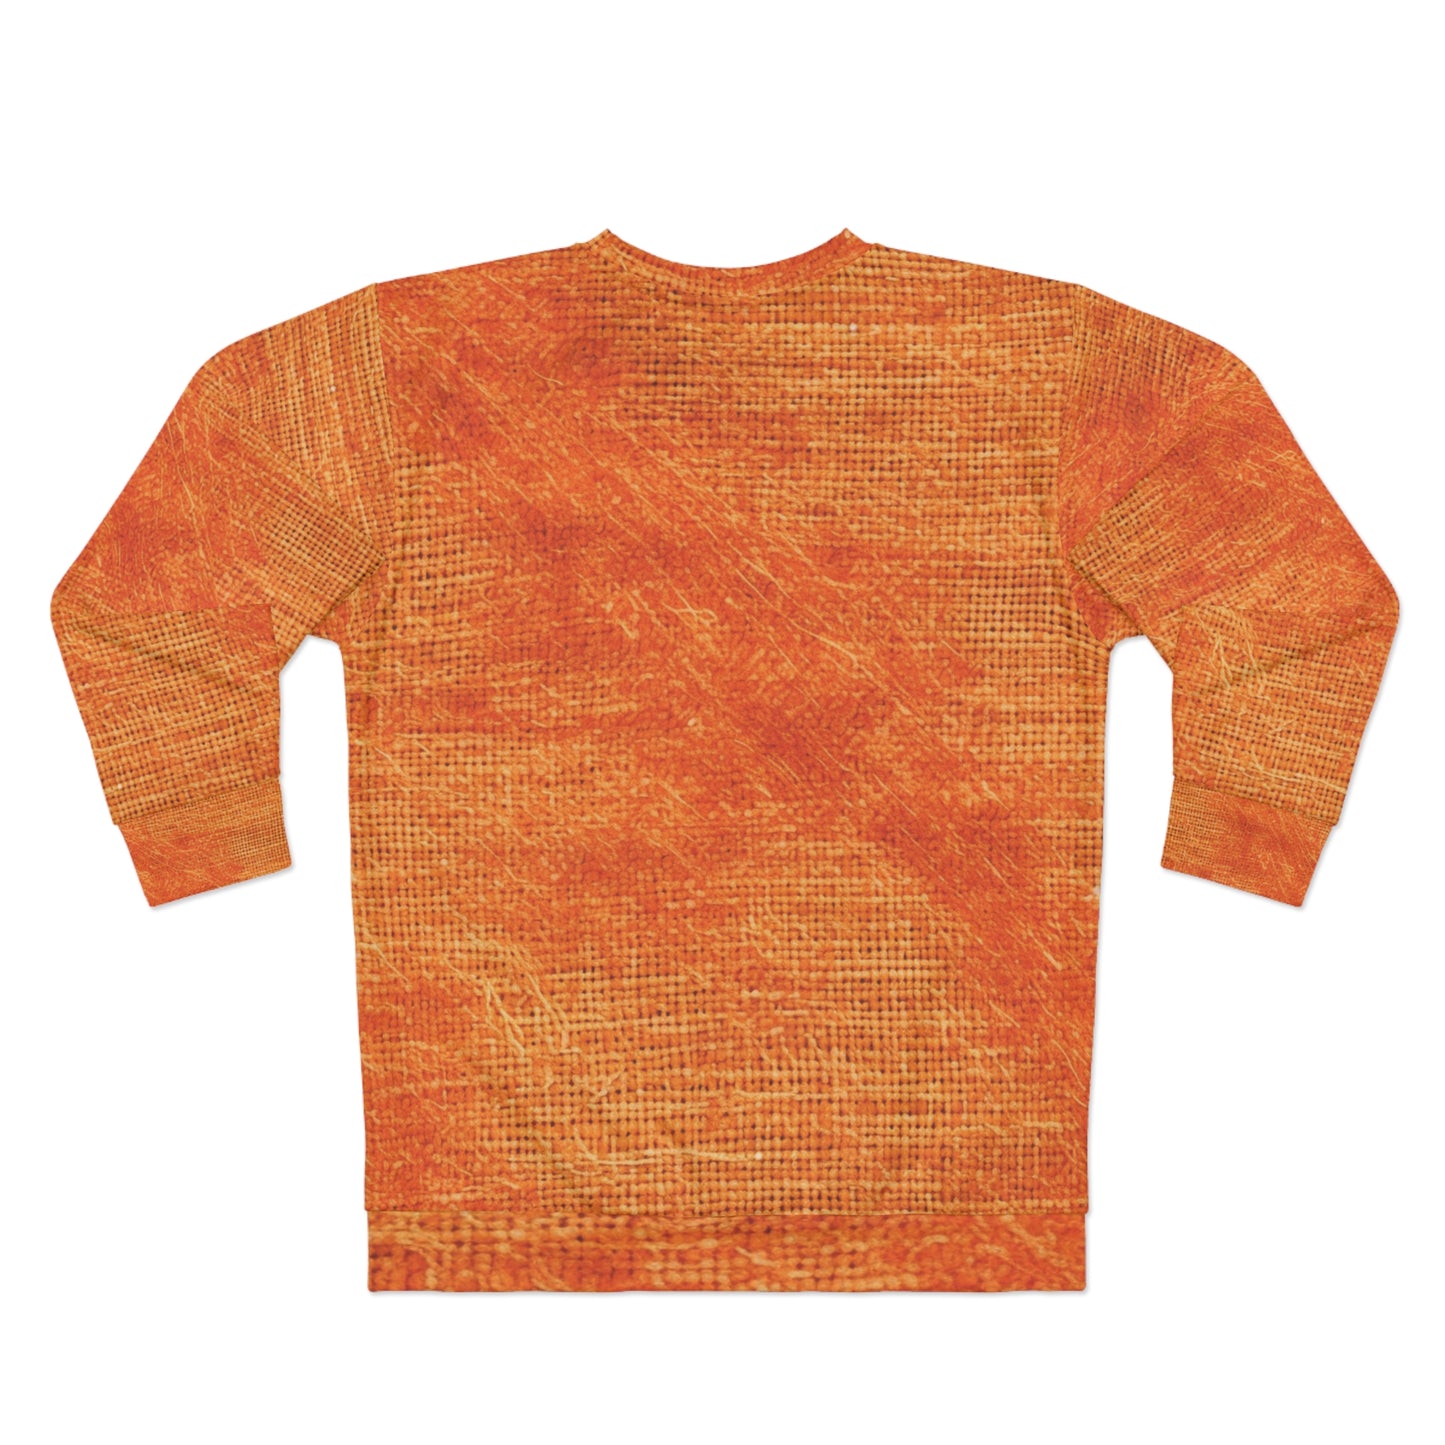 Burnt Orange/Rust: Denim-Inspired Autumn Fall Color Fabric - Unisex Sweatshirt (AOP)